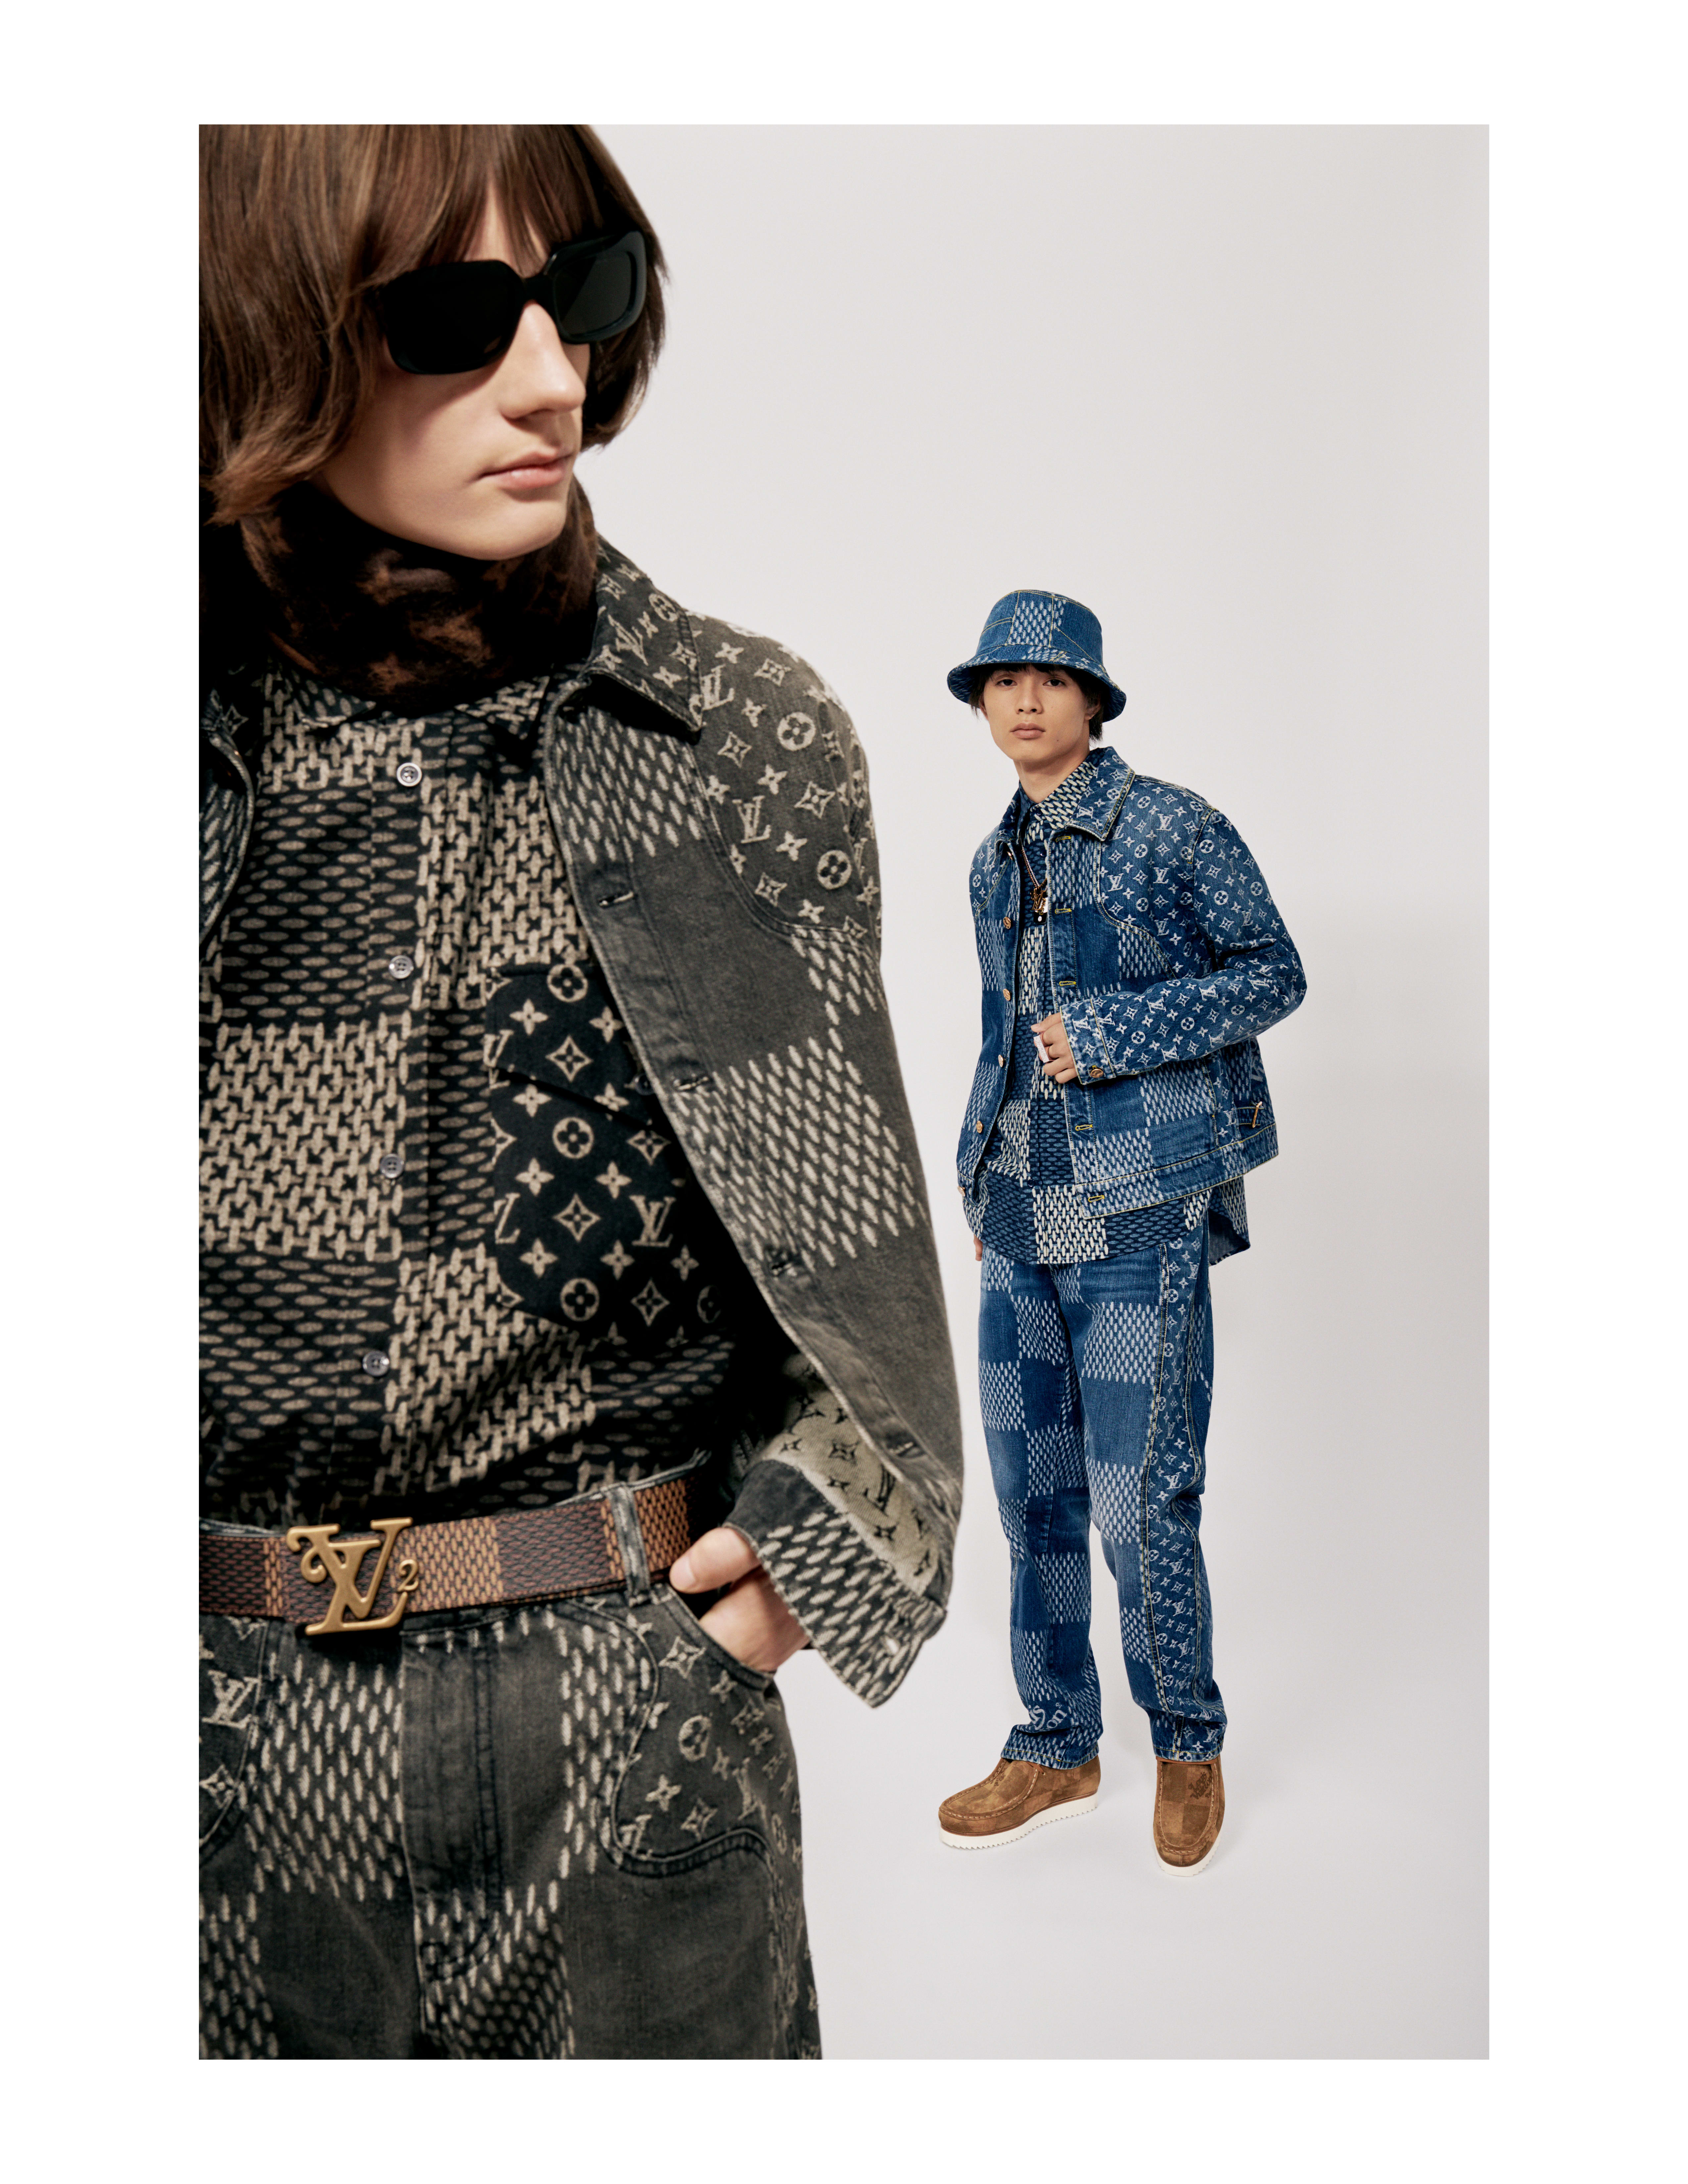 Shop The Louis Vuitton x Nigo Collaboration Now - ICON